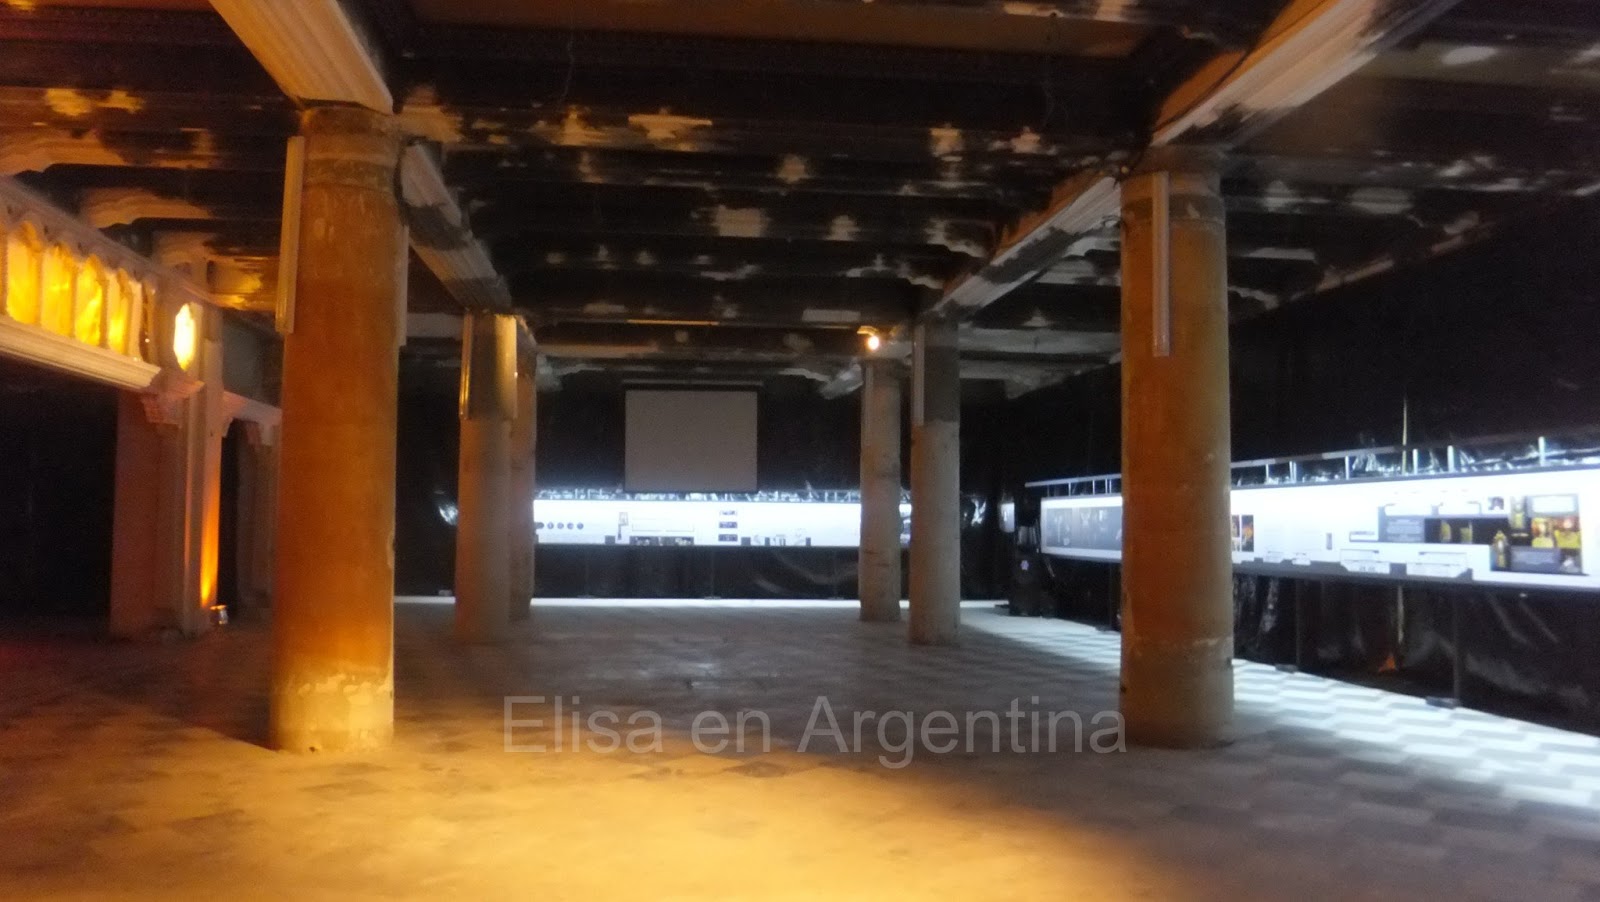 Palacio Fuentes, Rosario, Argentina, Elisa N, Blog de Viajes, Lifestyle, Travel